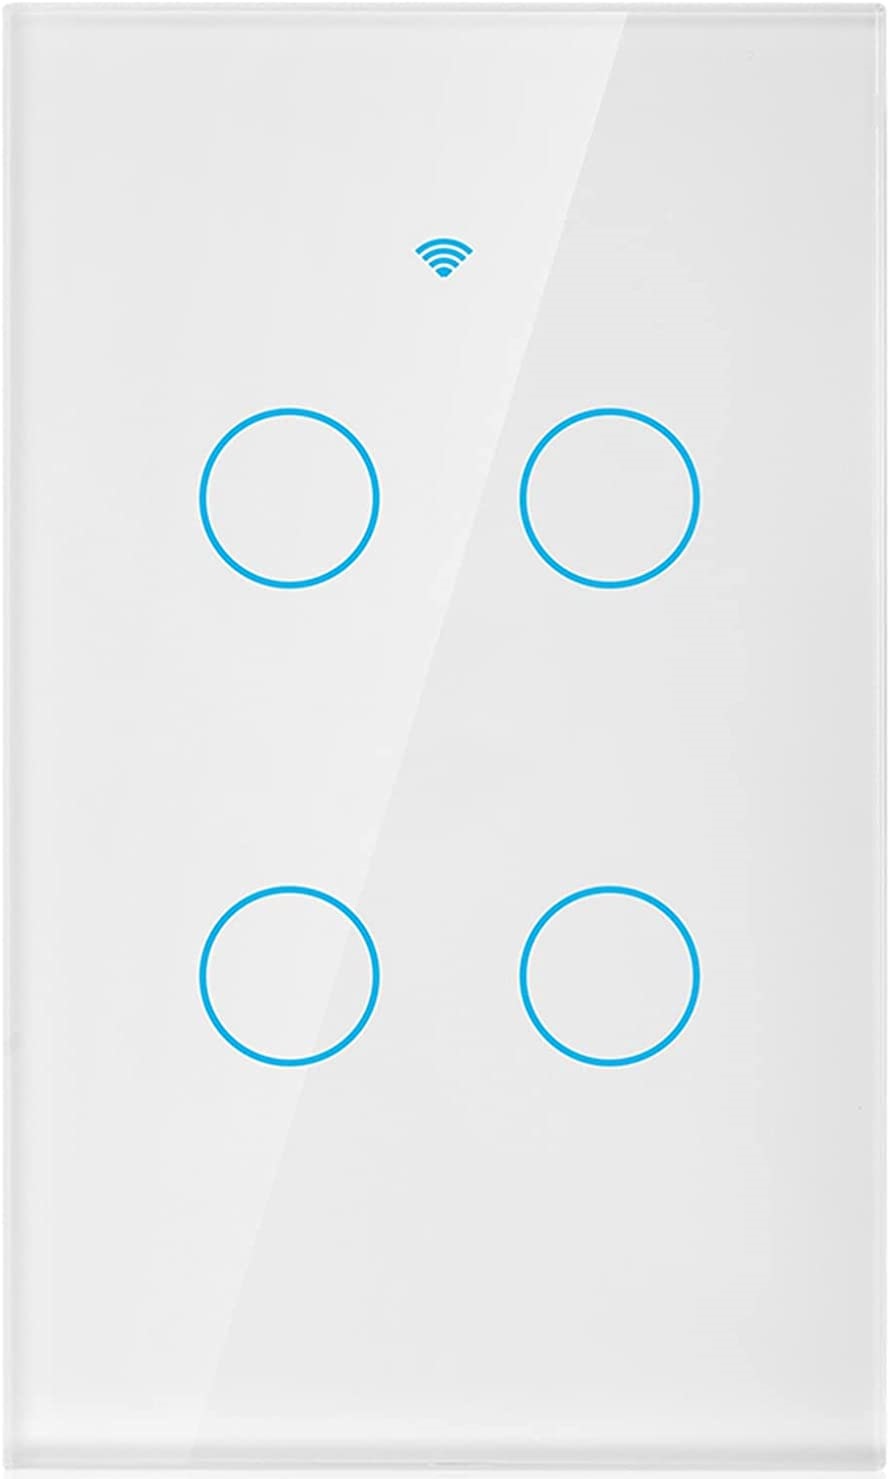 Apagador WIFI Inteligente sin neutro 4 botones Blanco - Smartlife Costa Rica